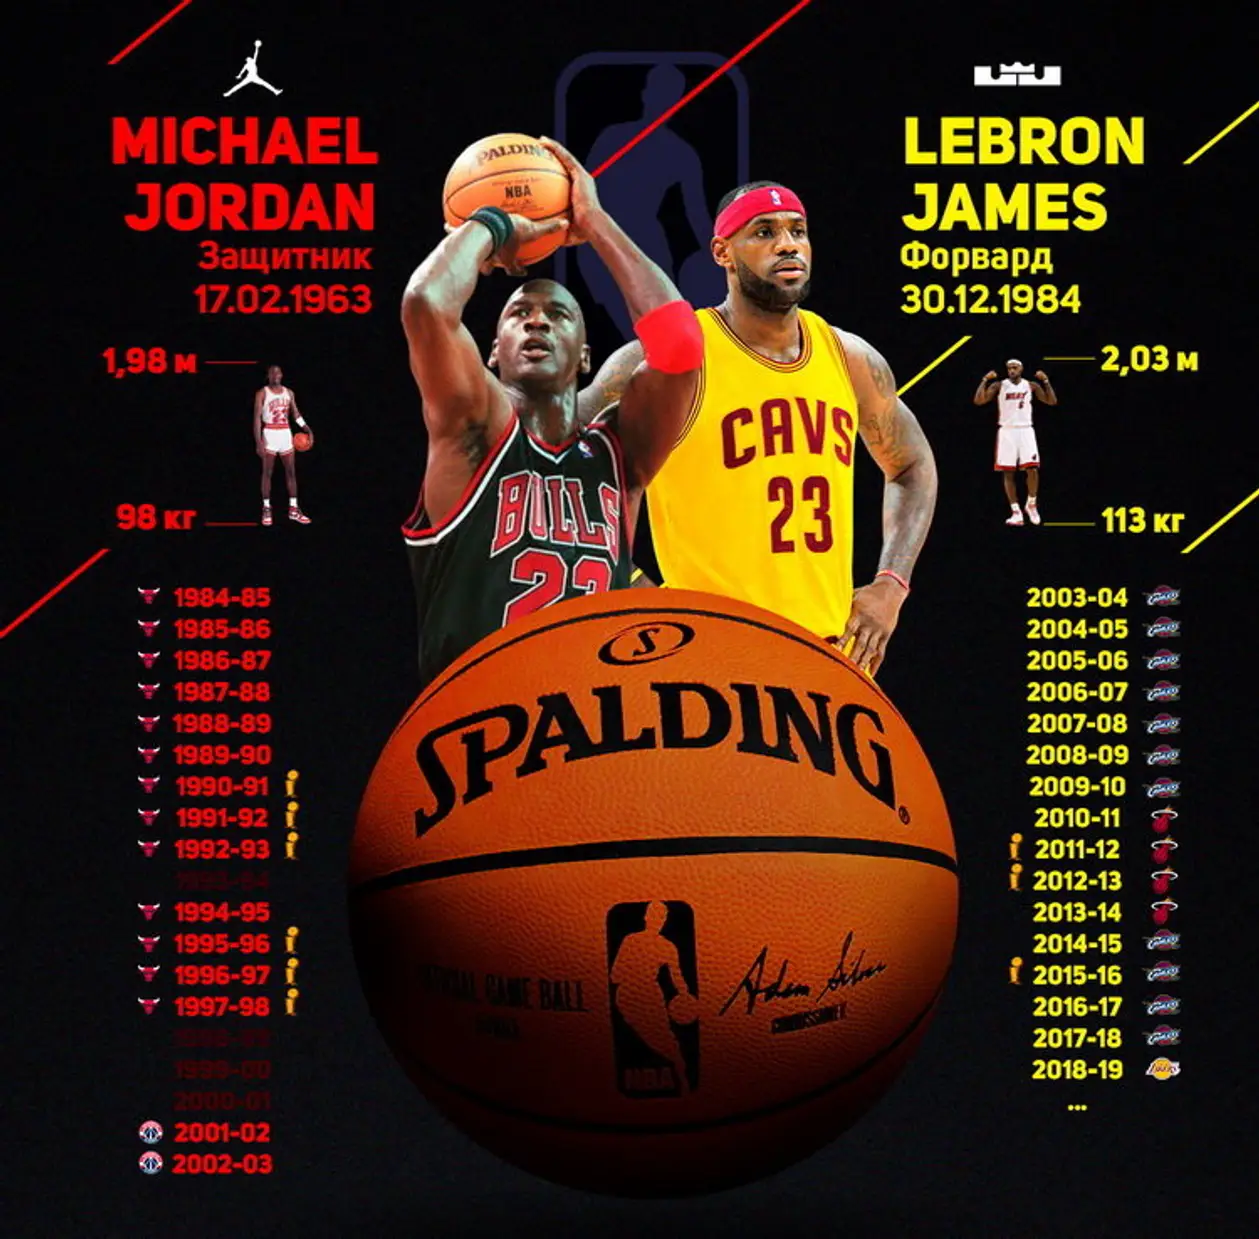 Леброн и Майкл провели по 15 сезонов в НБА. Кто круче